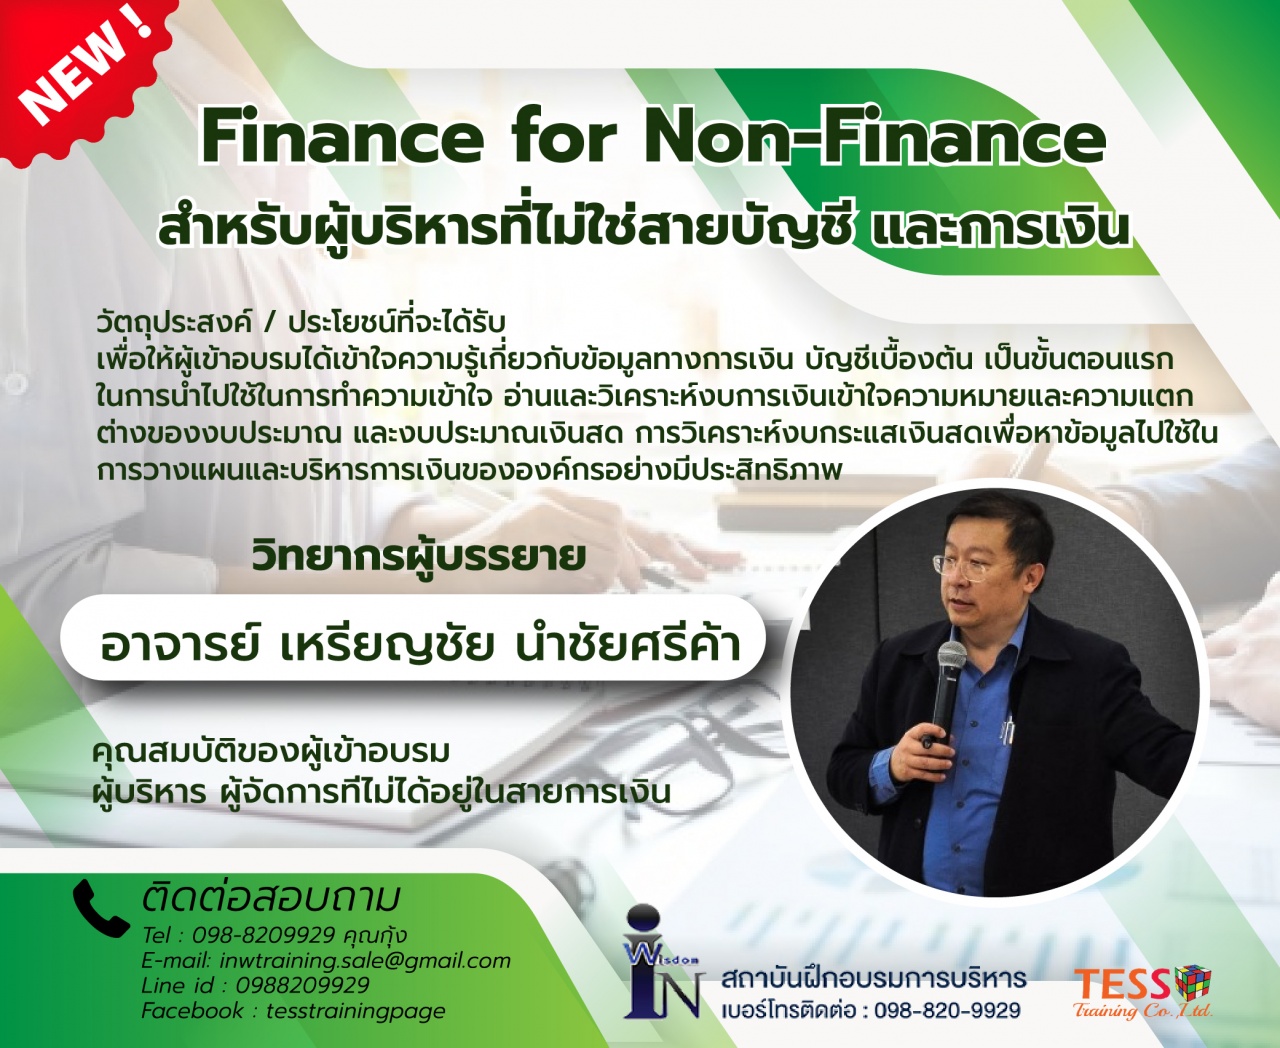 ยืนยัน หลักสูตร finance for nonfinance ความรู้พื้นฐานทางด้านบัญชี และการเงิน และการประยุกต์ใช้เบื้องต้นสำหรับพนักงาน 22 ม.ค.63